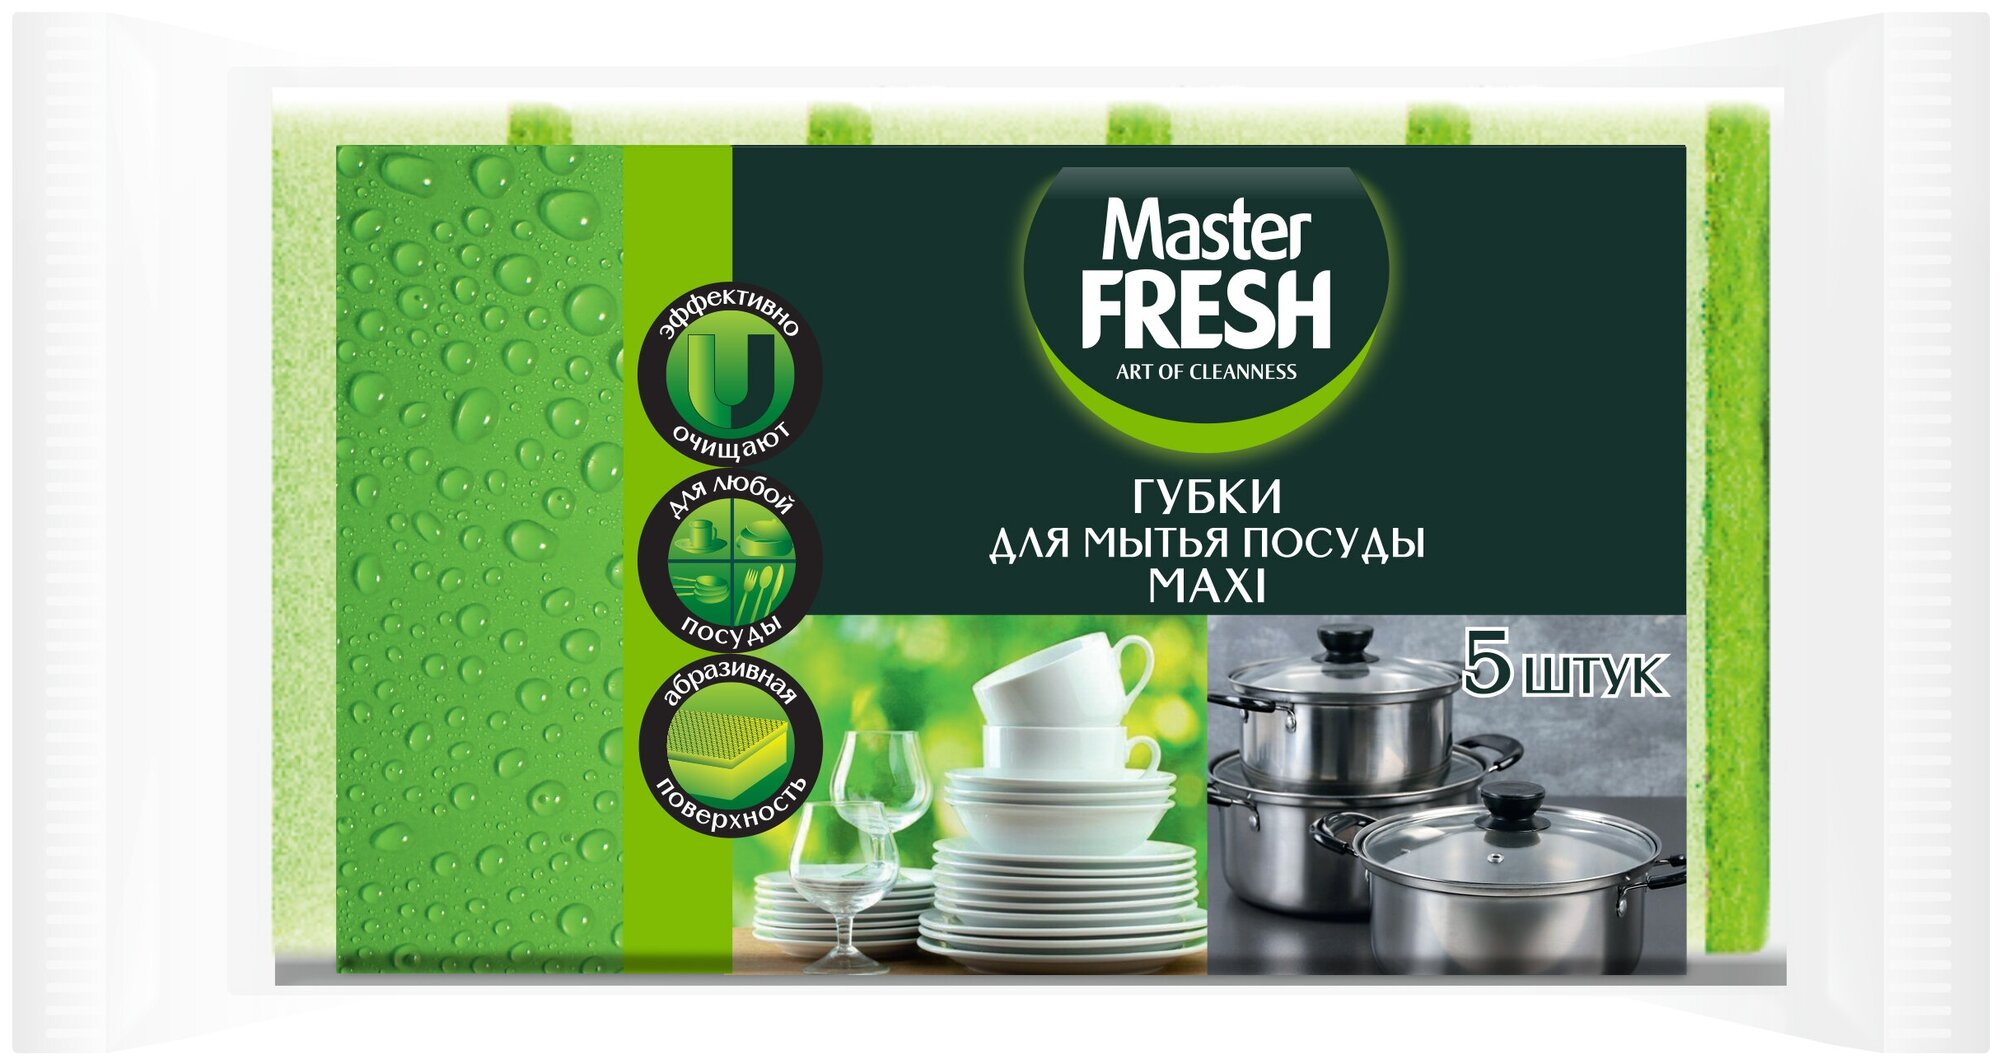 Губки для посуды Master FRESH Maxi